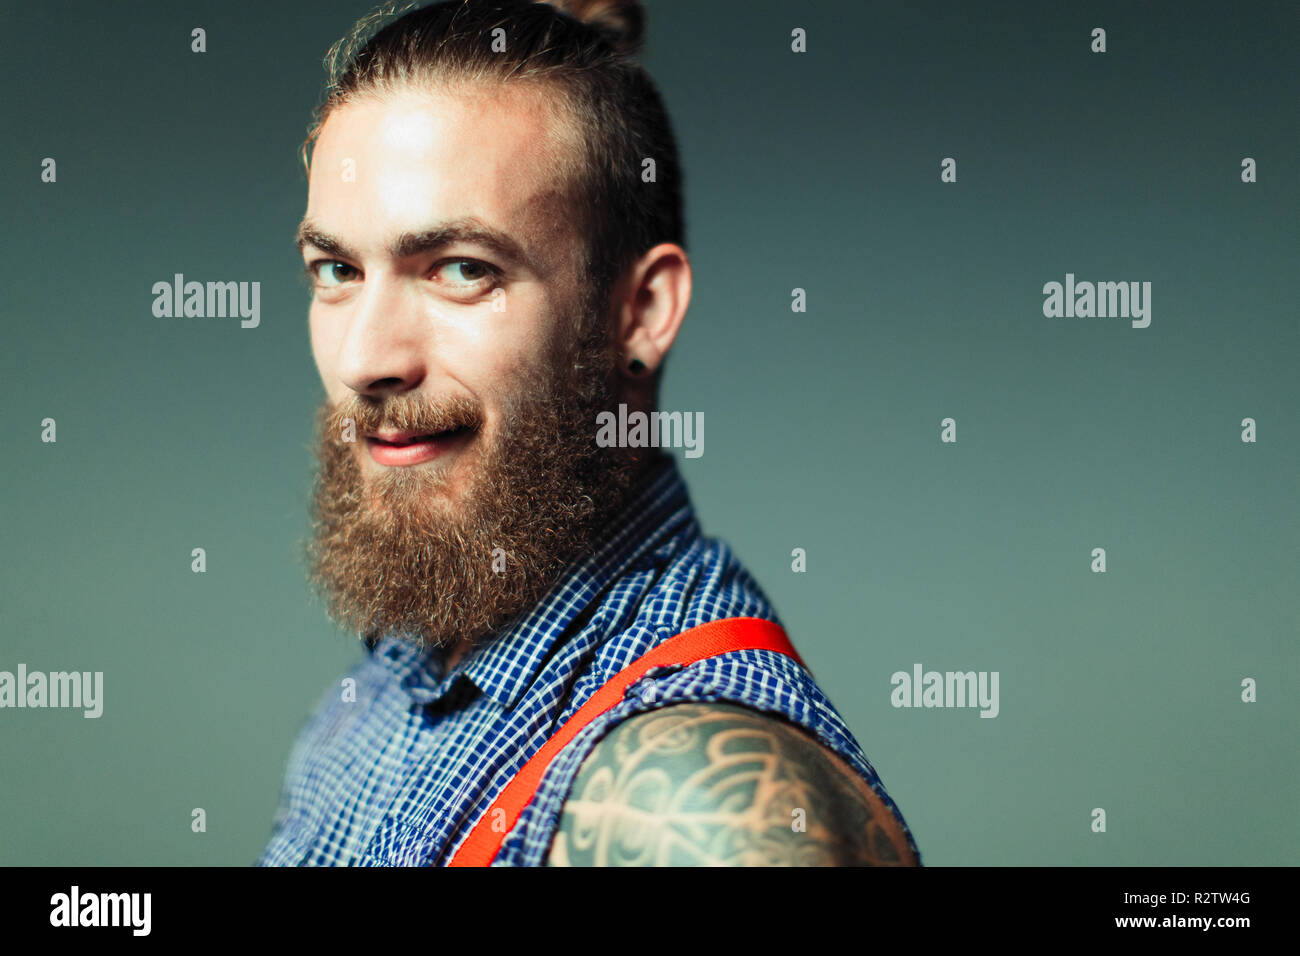 Confiant, Portrait homme cool hipster avec barbe et de tatouage de l'épaule Banque D'Images